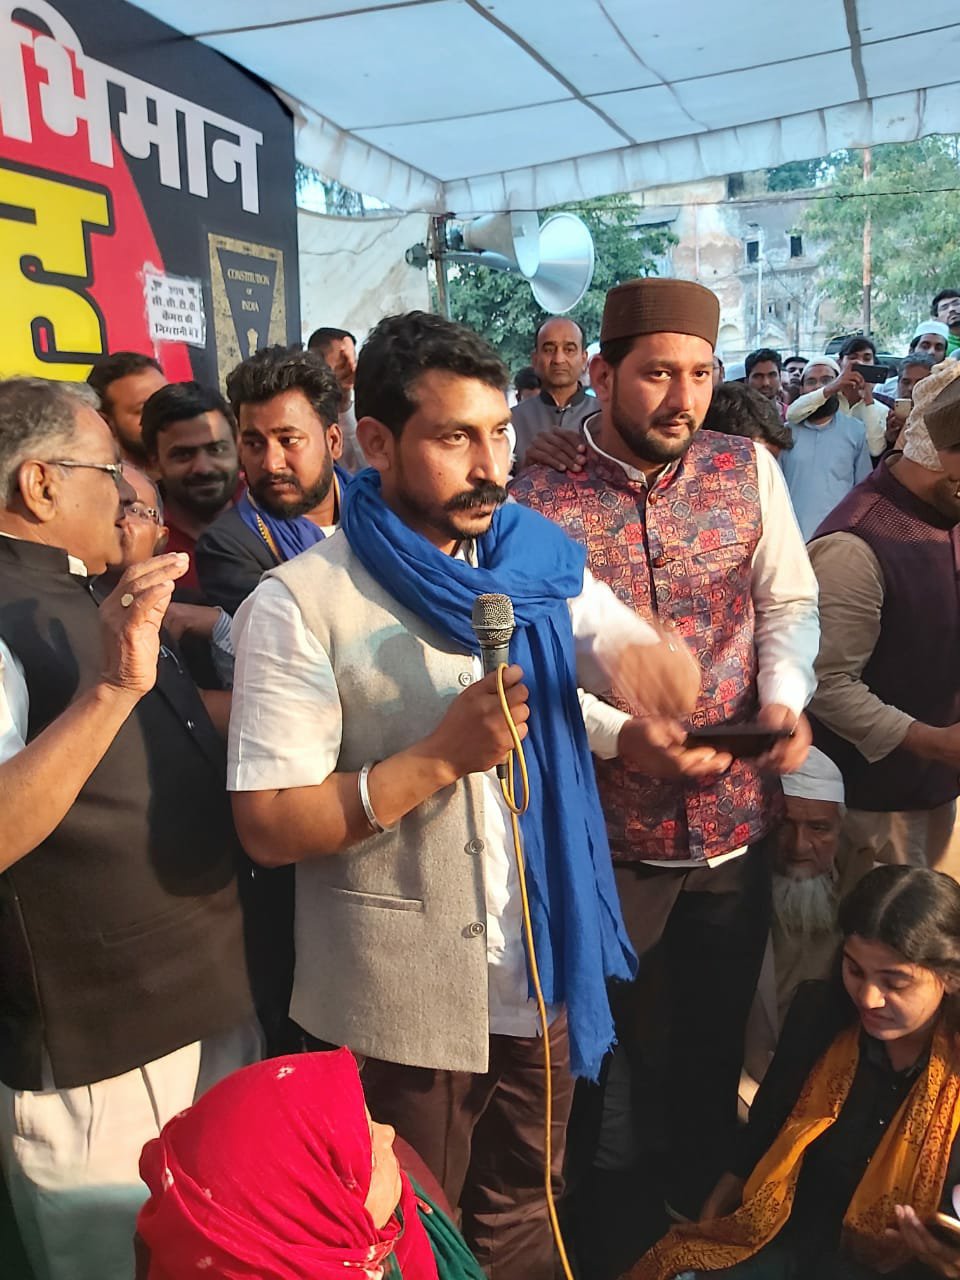 मध्य प्रदेश की राजधानी भोपाल के इक़बाल मैदान में सीएए एवं एनआरसी के खिलाफ हुआ जनसभा का आयोजन, भीम आर्मी चीफ चंद्रशेखर रावण ने शिरकत कर किया सभा को संबोधित | New India Times